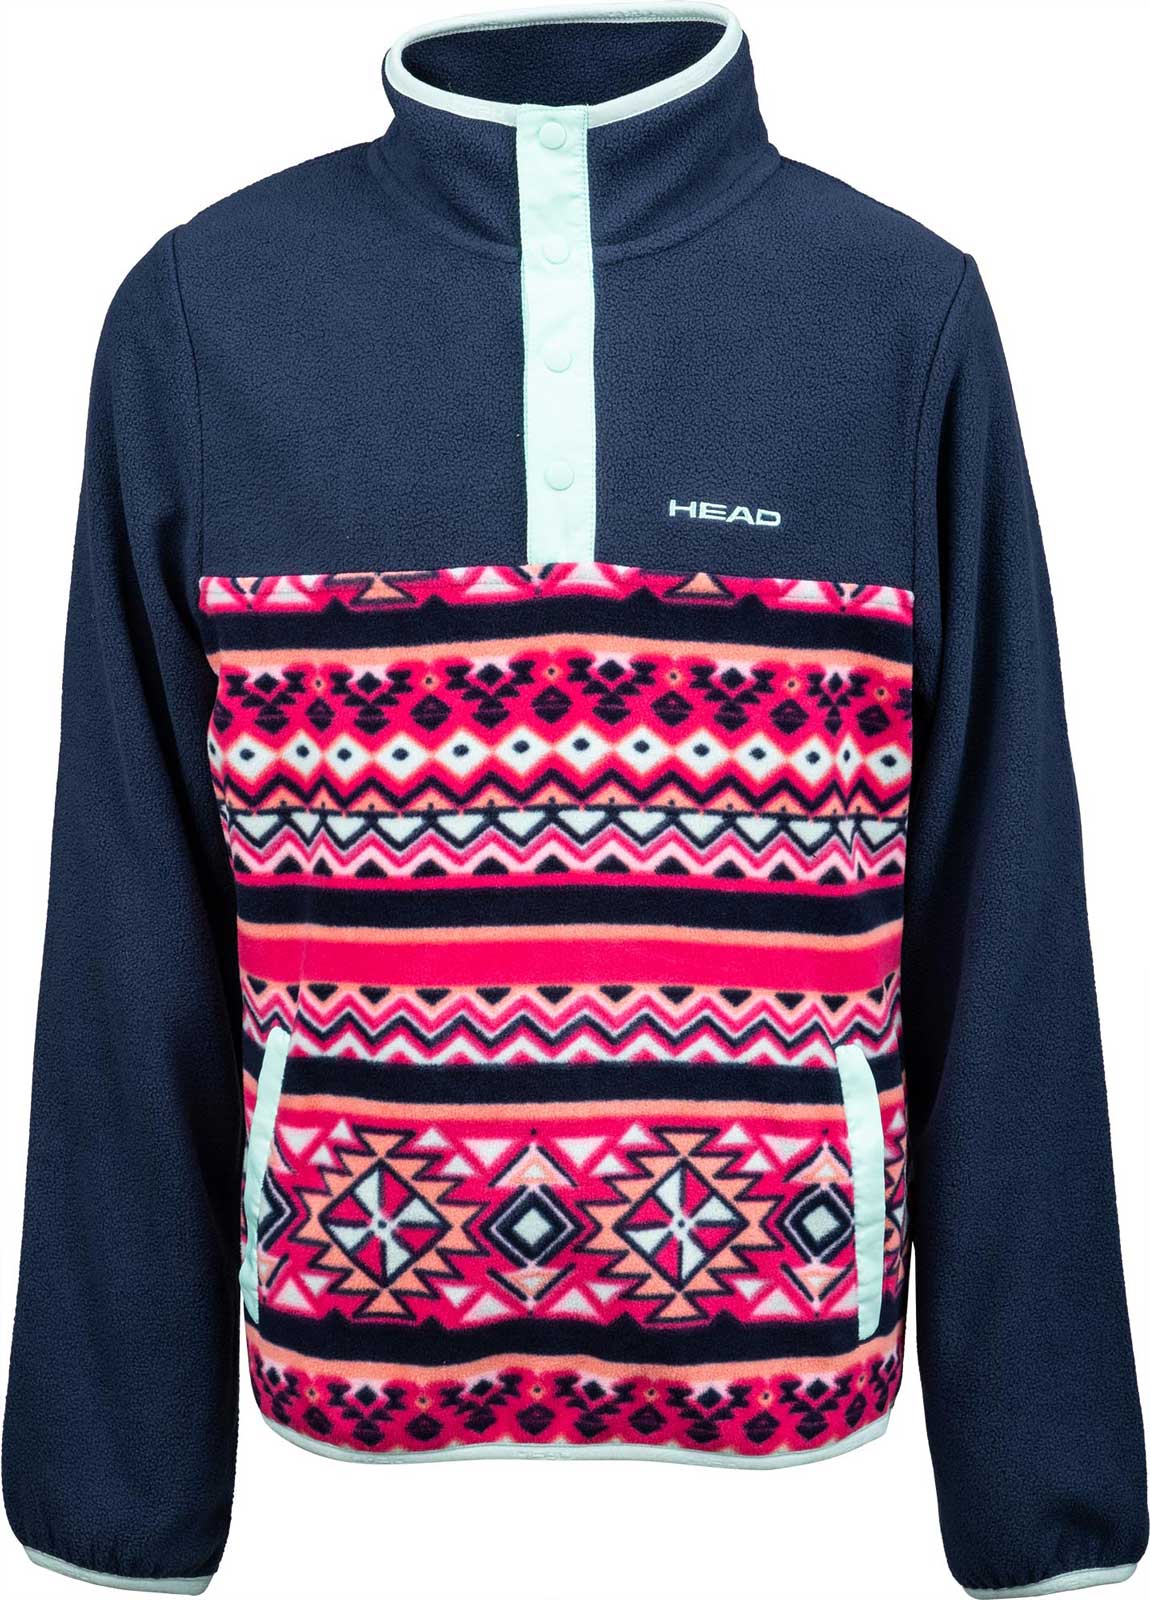 Kids’ fleece sweatshirt